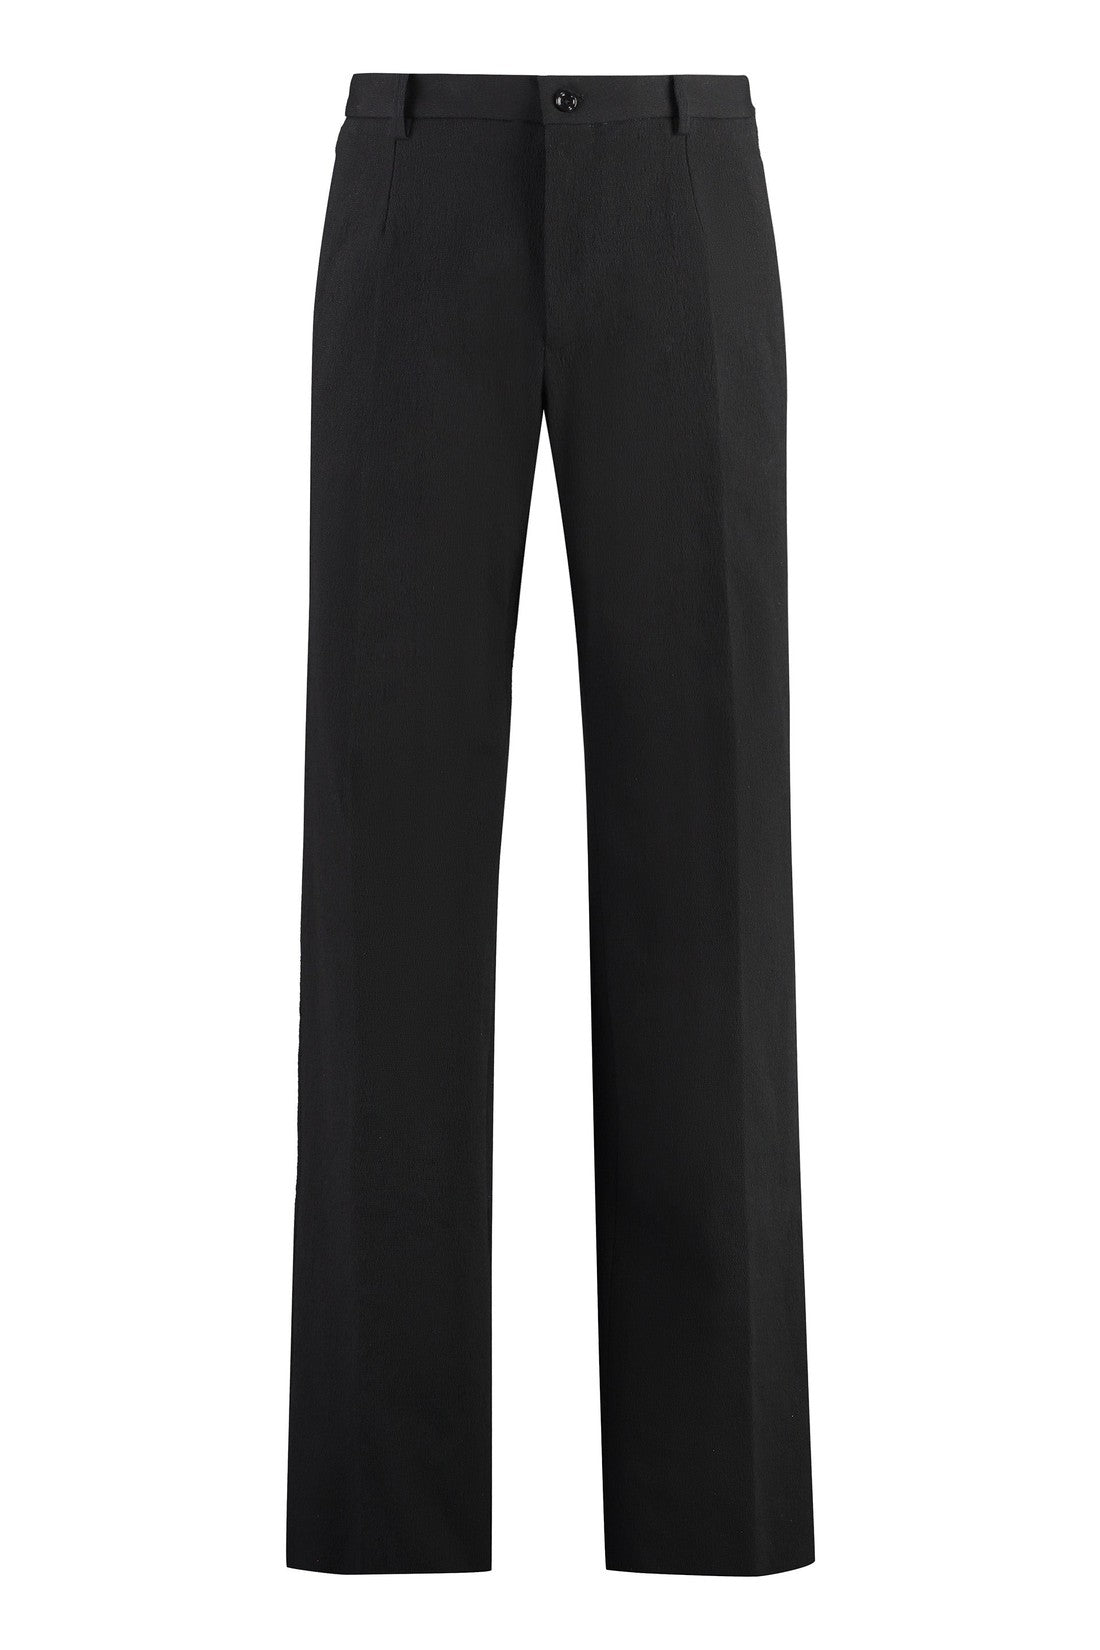 Dolce & Gabbana-OUTLET-SALE-Blend Cotton trousers-ARCHIVIST